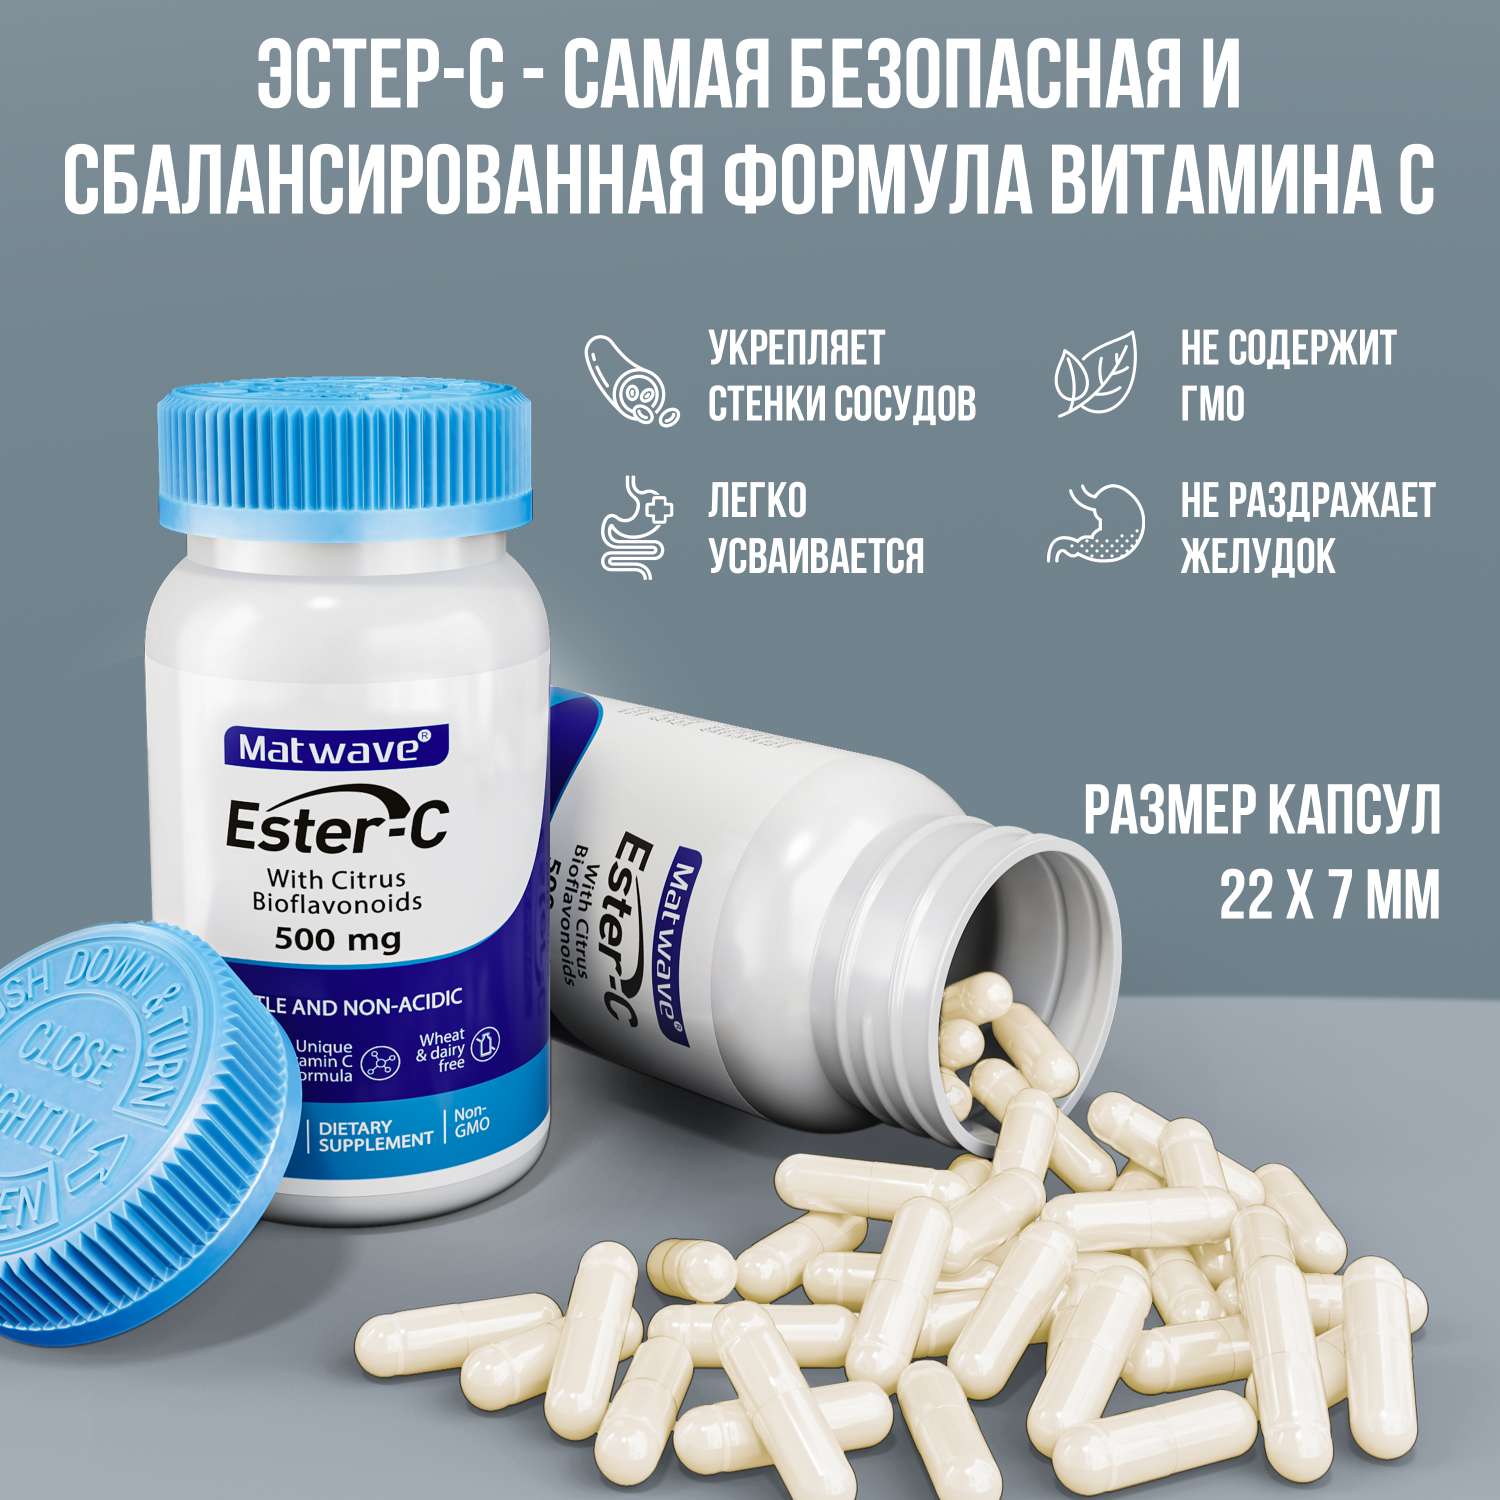 Витамин С Matwave Ester-C Эстер С 500 mg 60 капсул комплект 3 упаковки - фото 3